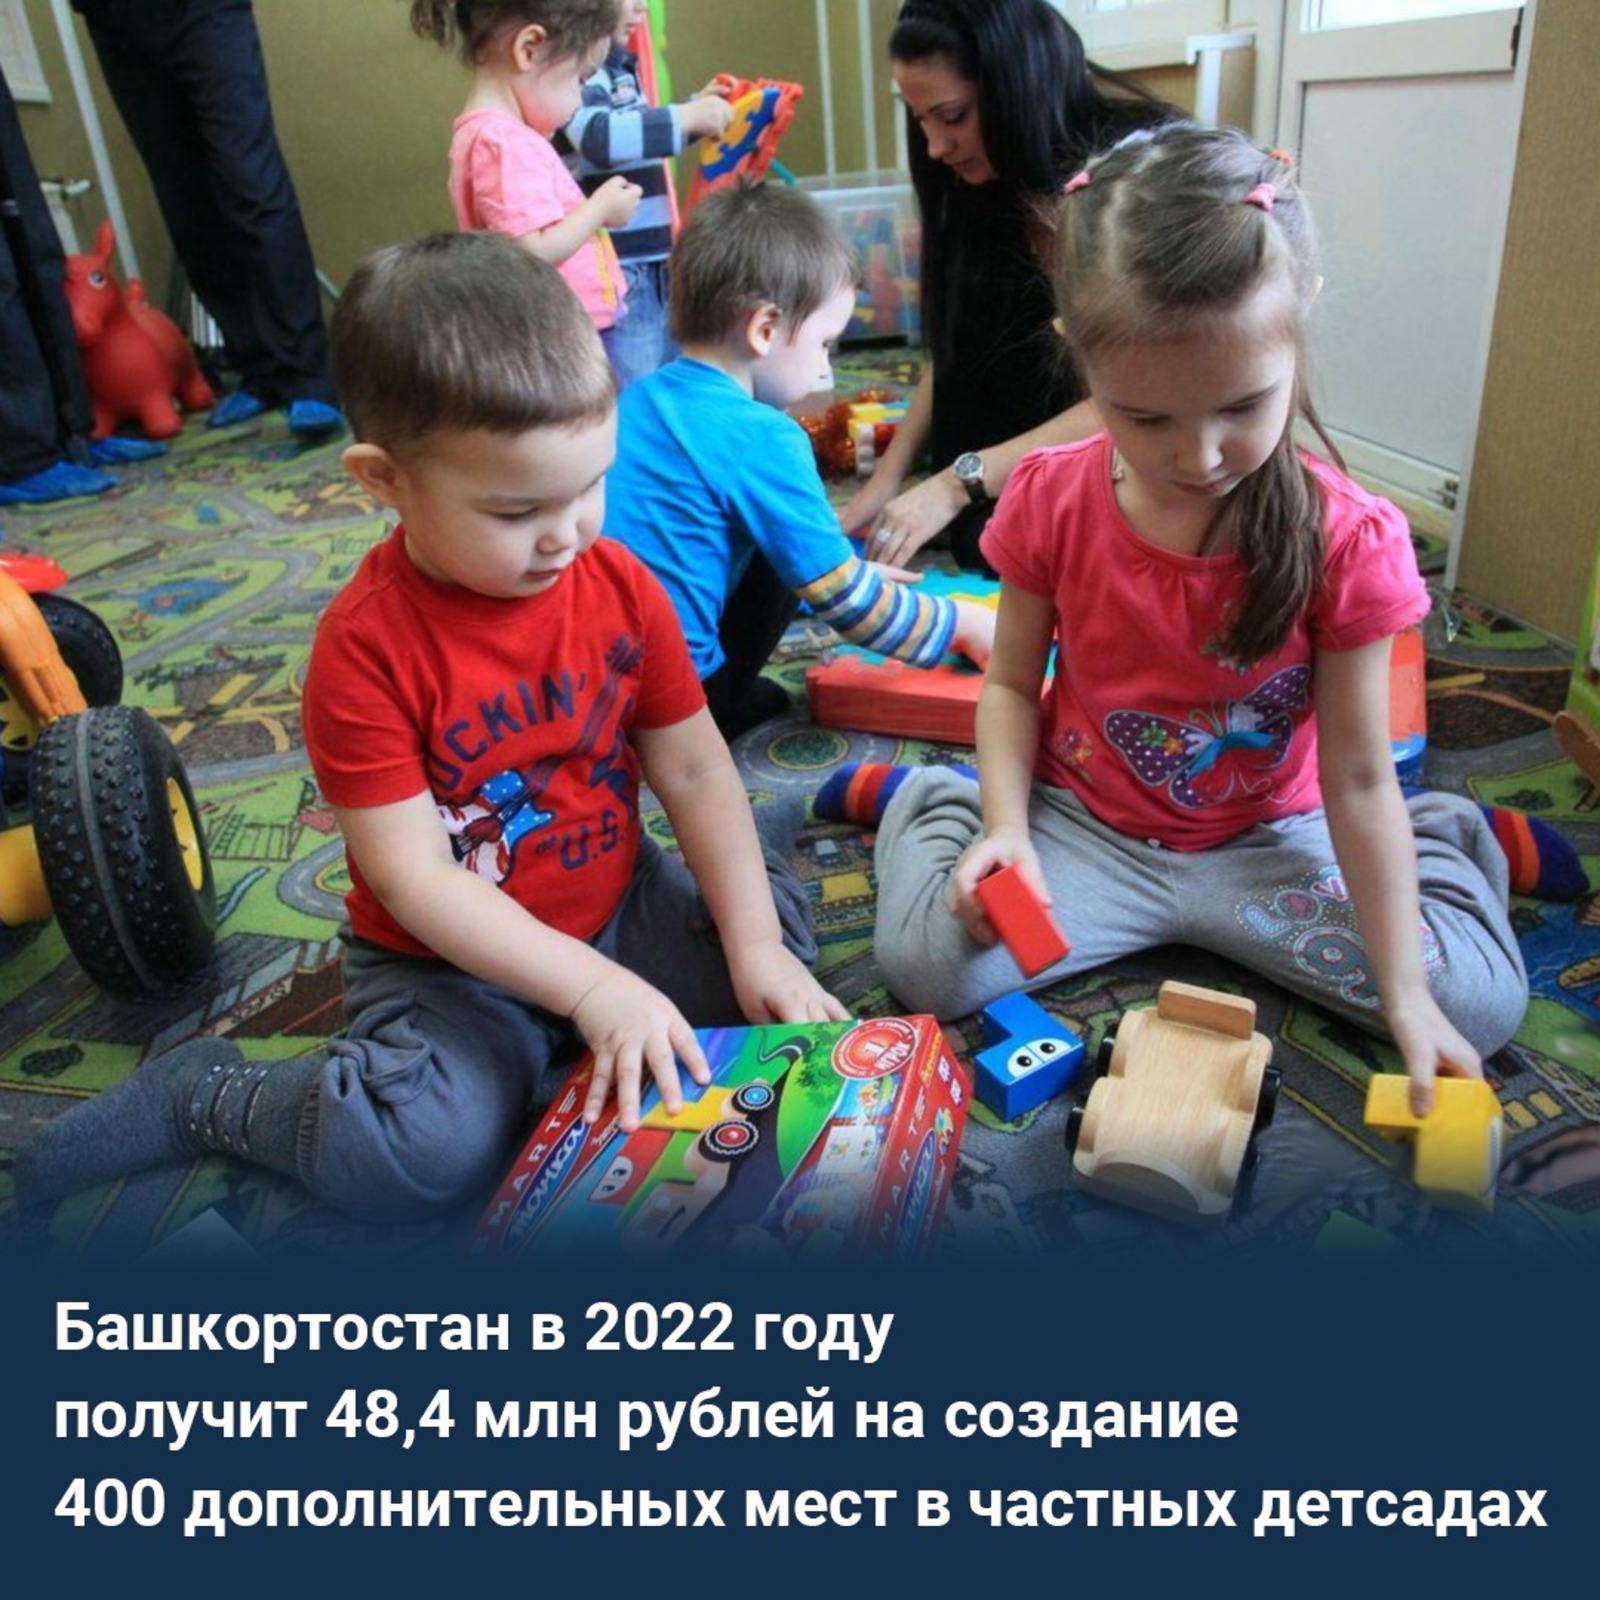 В Башкортостане создадут 400 дополнительных мест в частных детсадах